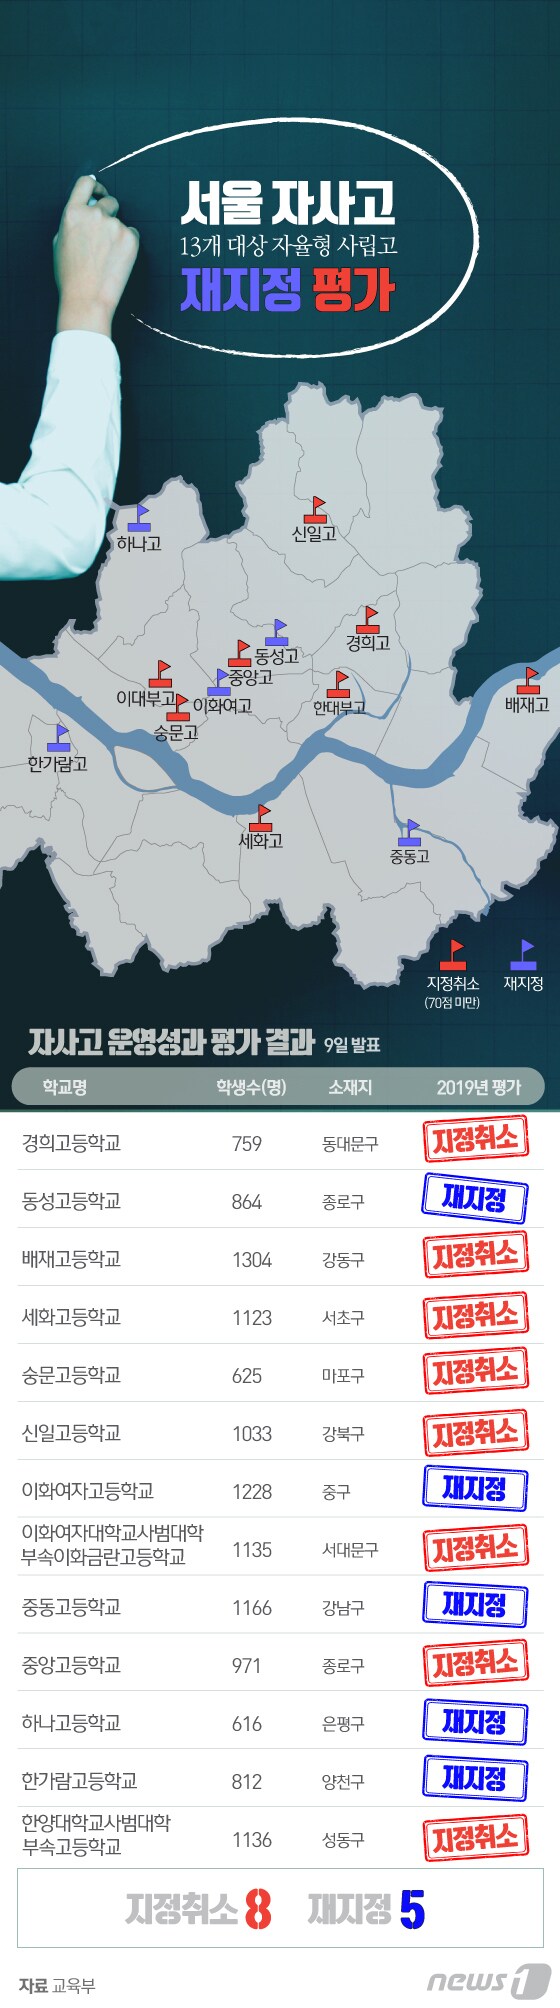 [그래픽뉴스] 서울 자사고 재지정 평가 결과